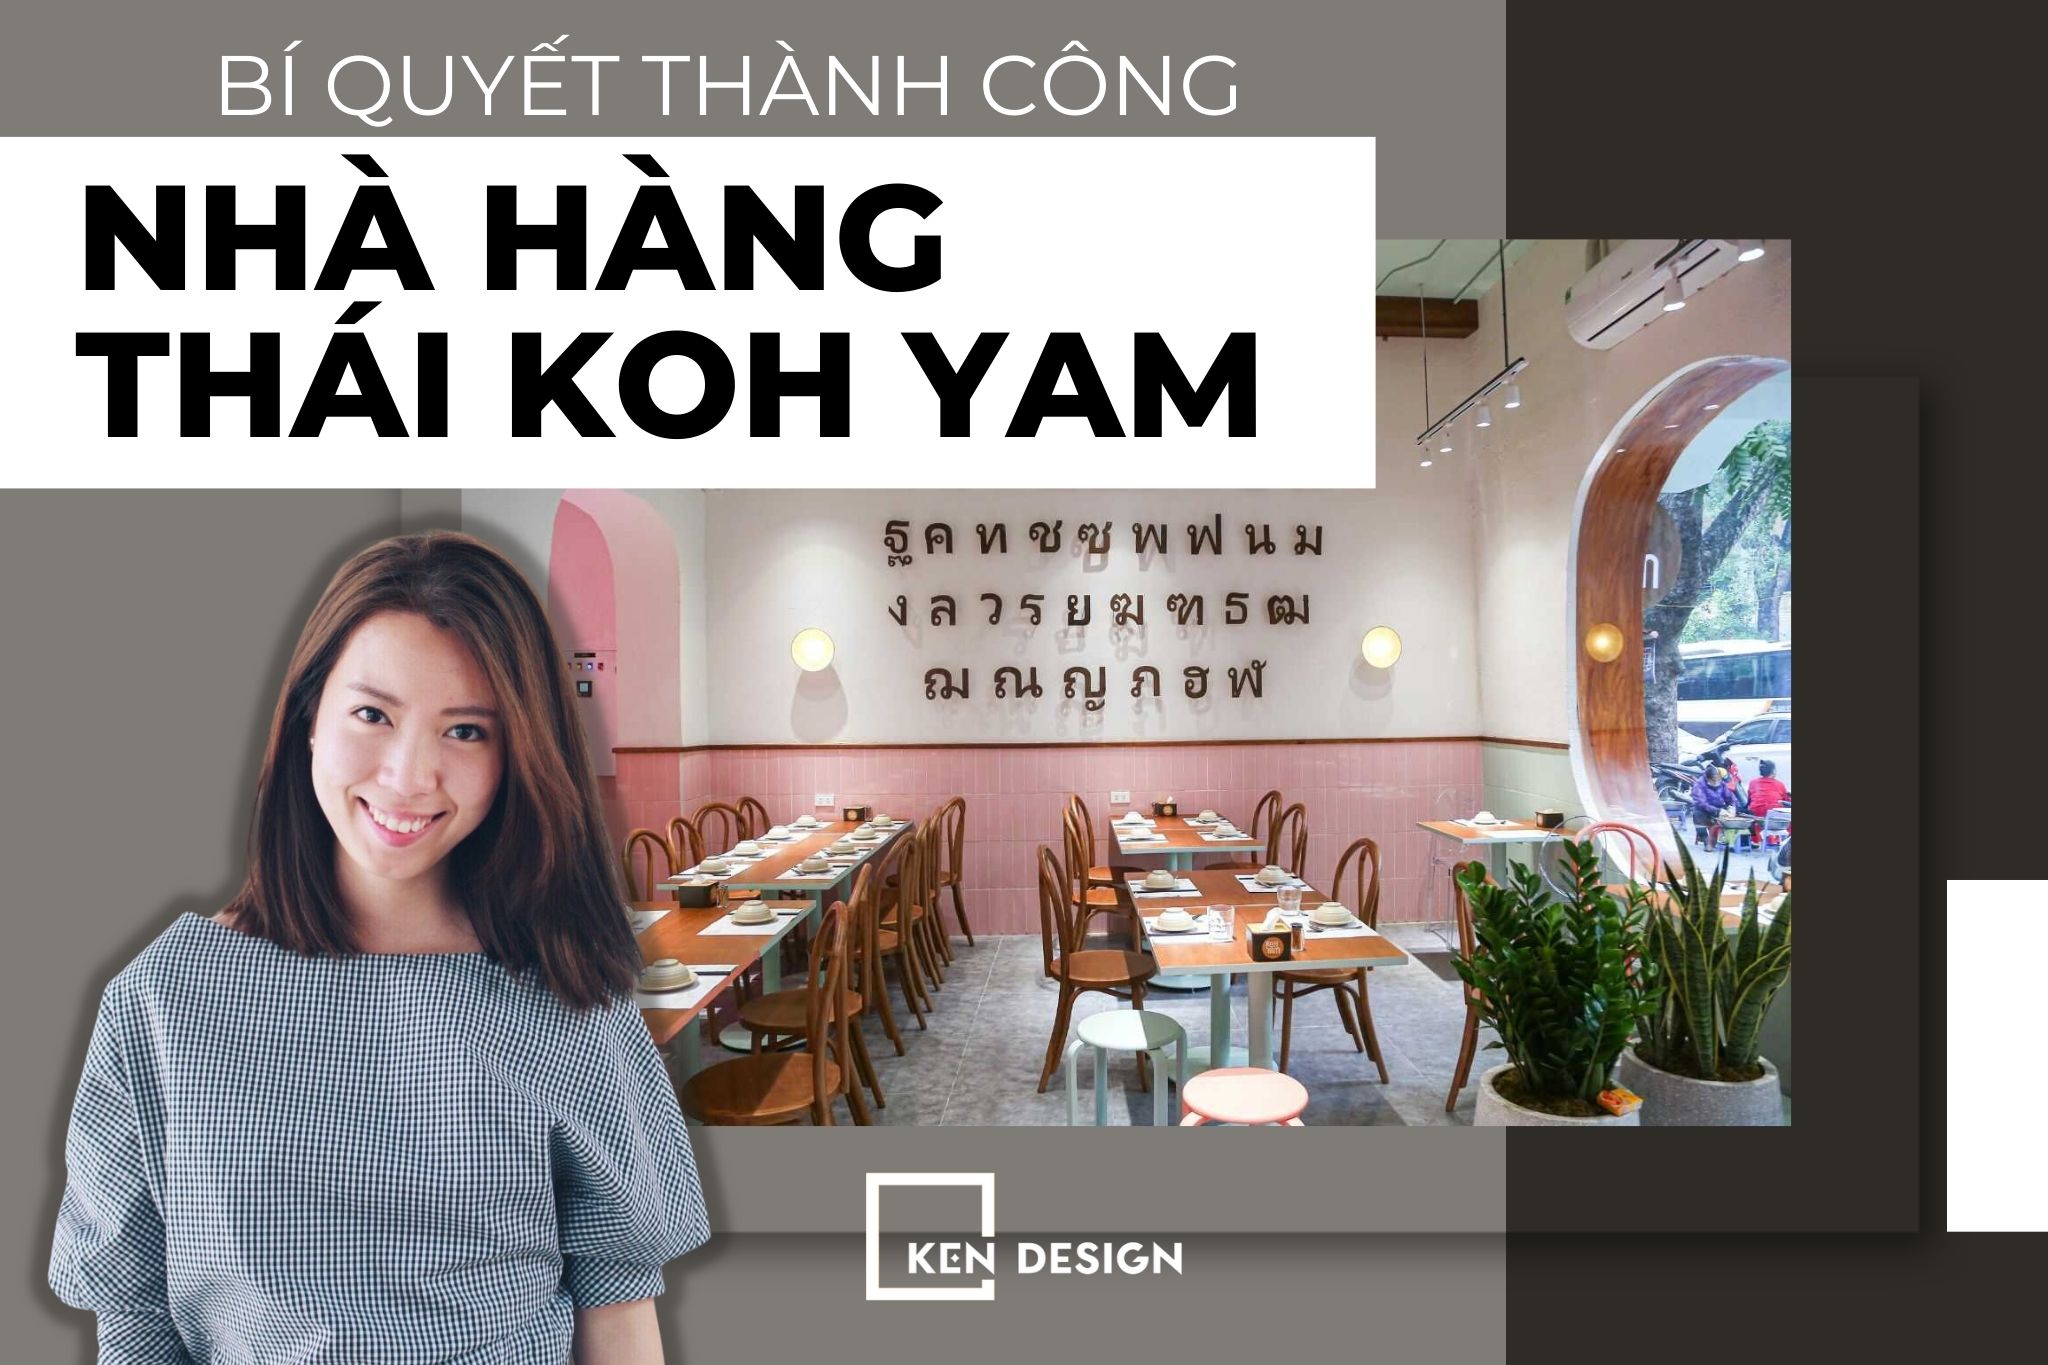 Bí quyết khởi nghiệp của chuỗi nhà hàng Thái Koh Yam